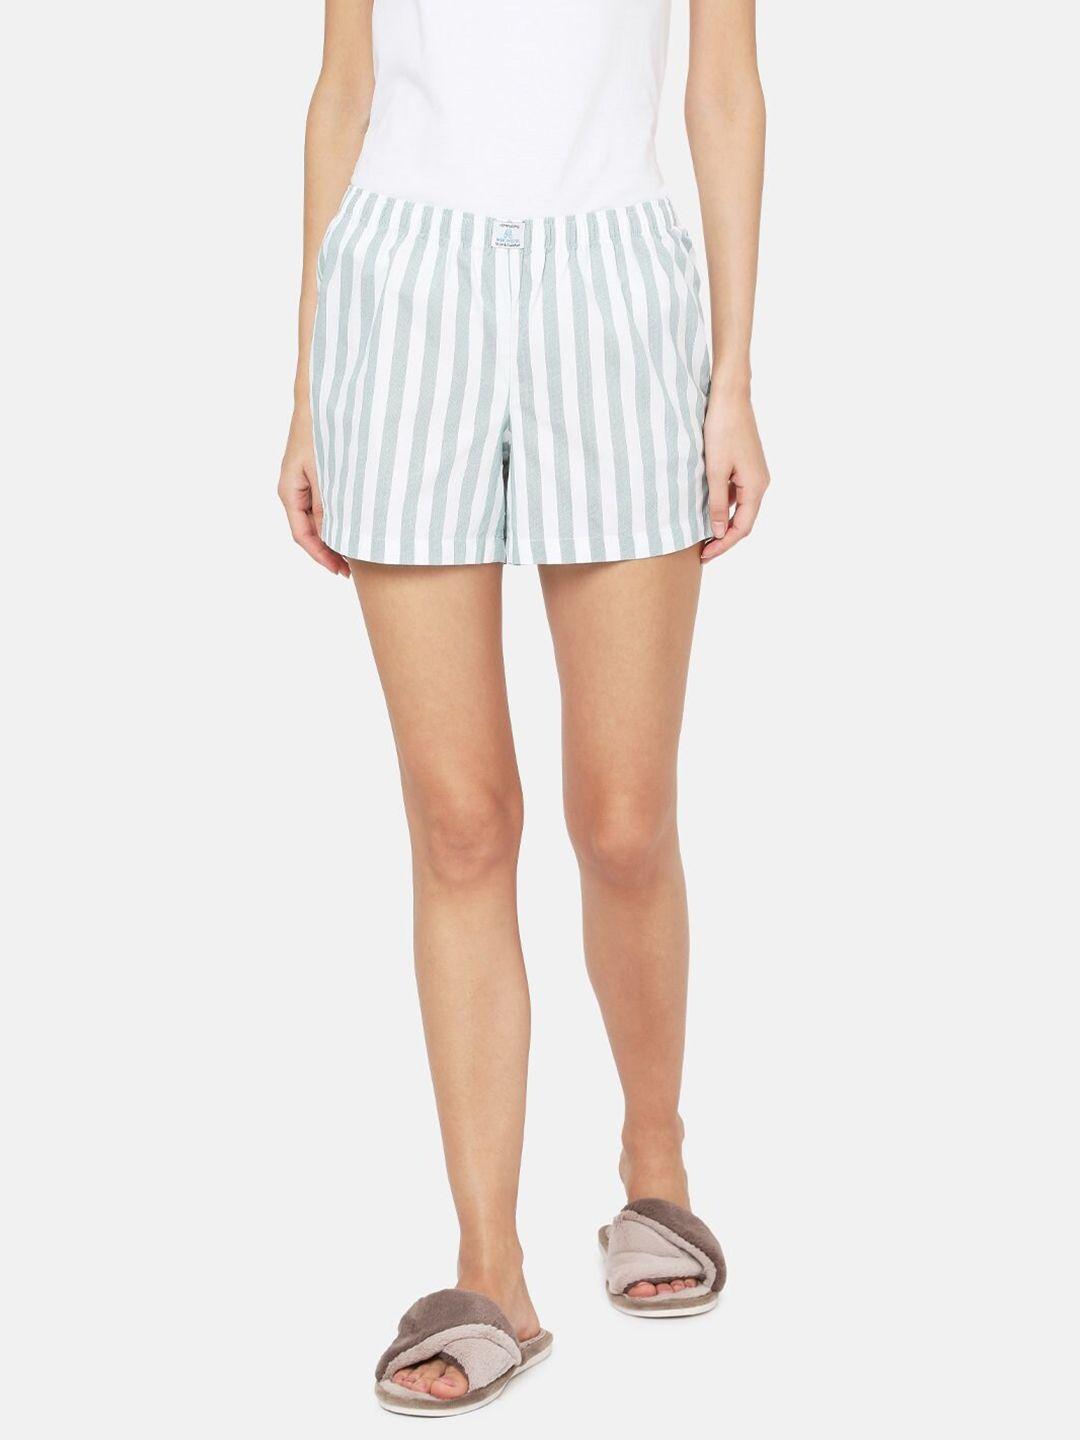 papa-brands-women-white-&-grey-striped-lounge-shorts